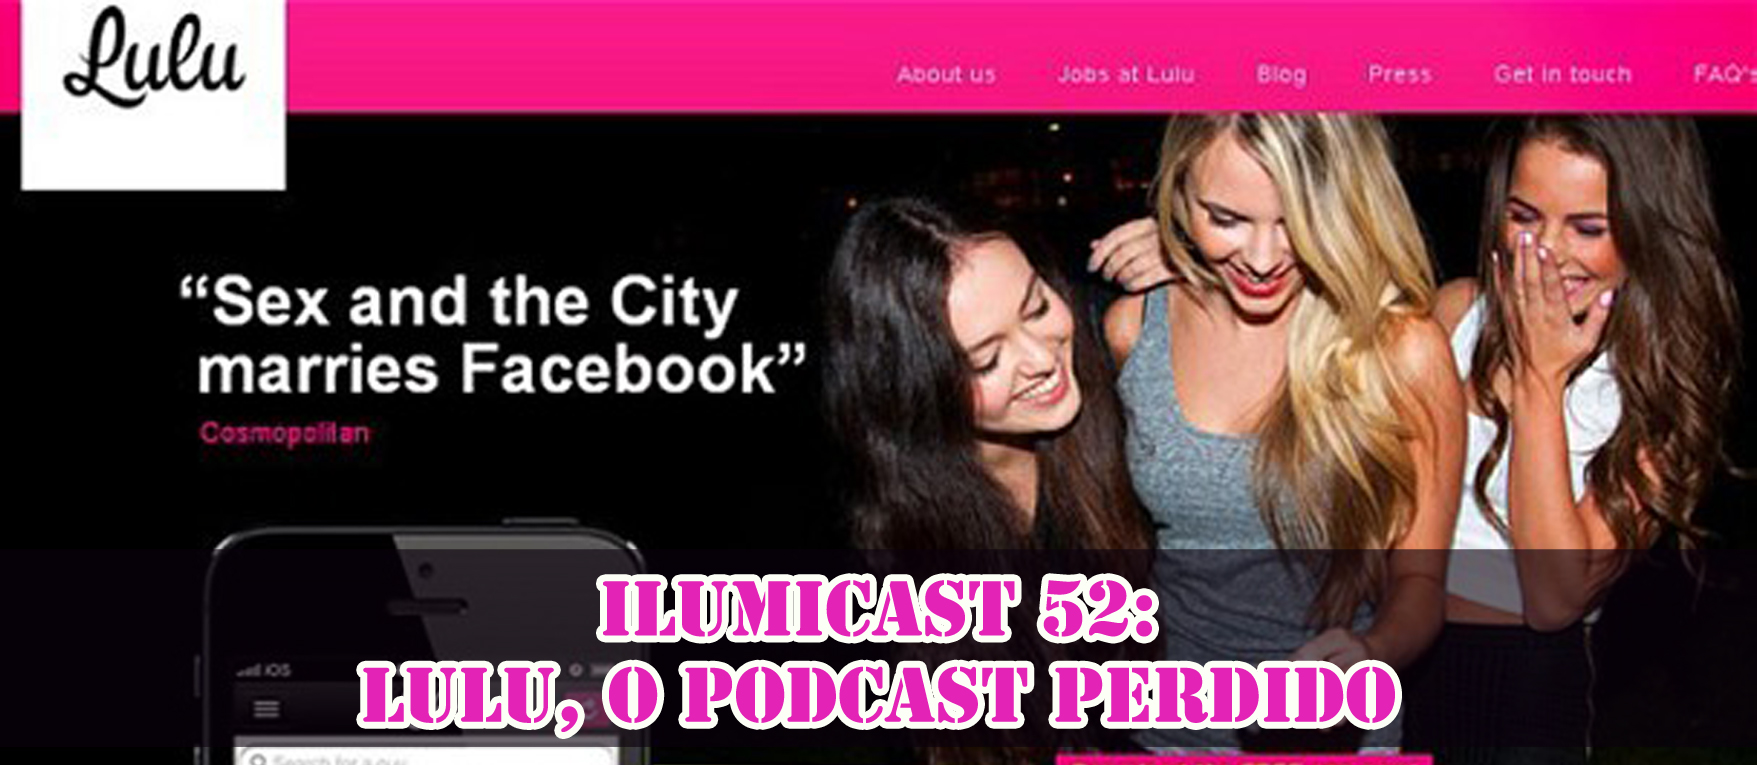 Você está visualizando atualmente ILUMICAST #52 – App Lulu, o podcast perdido.